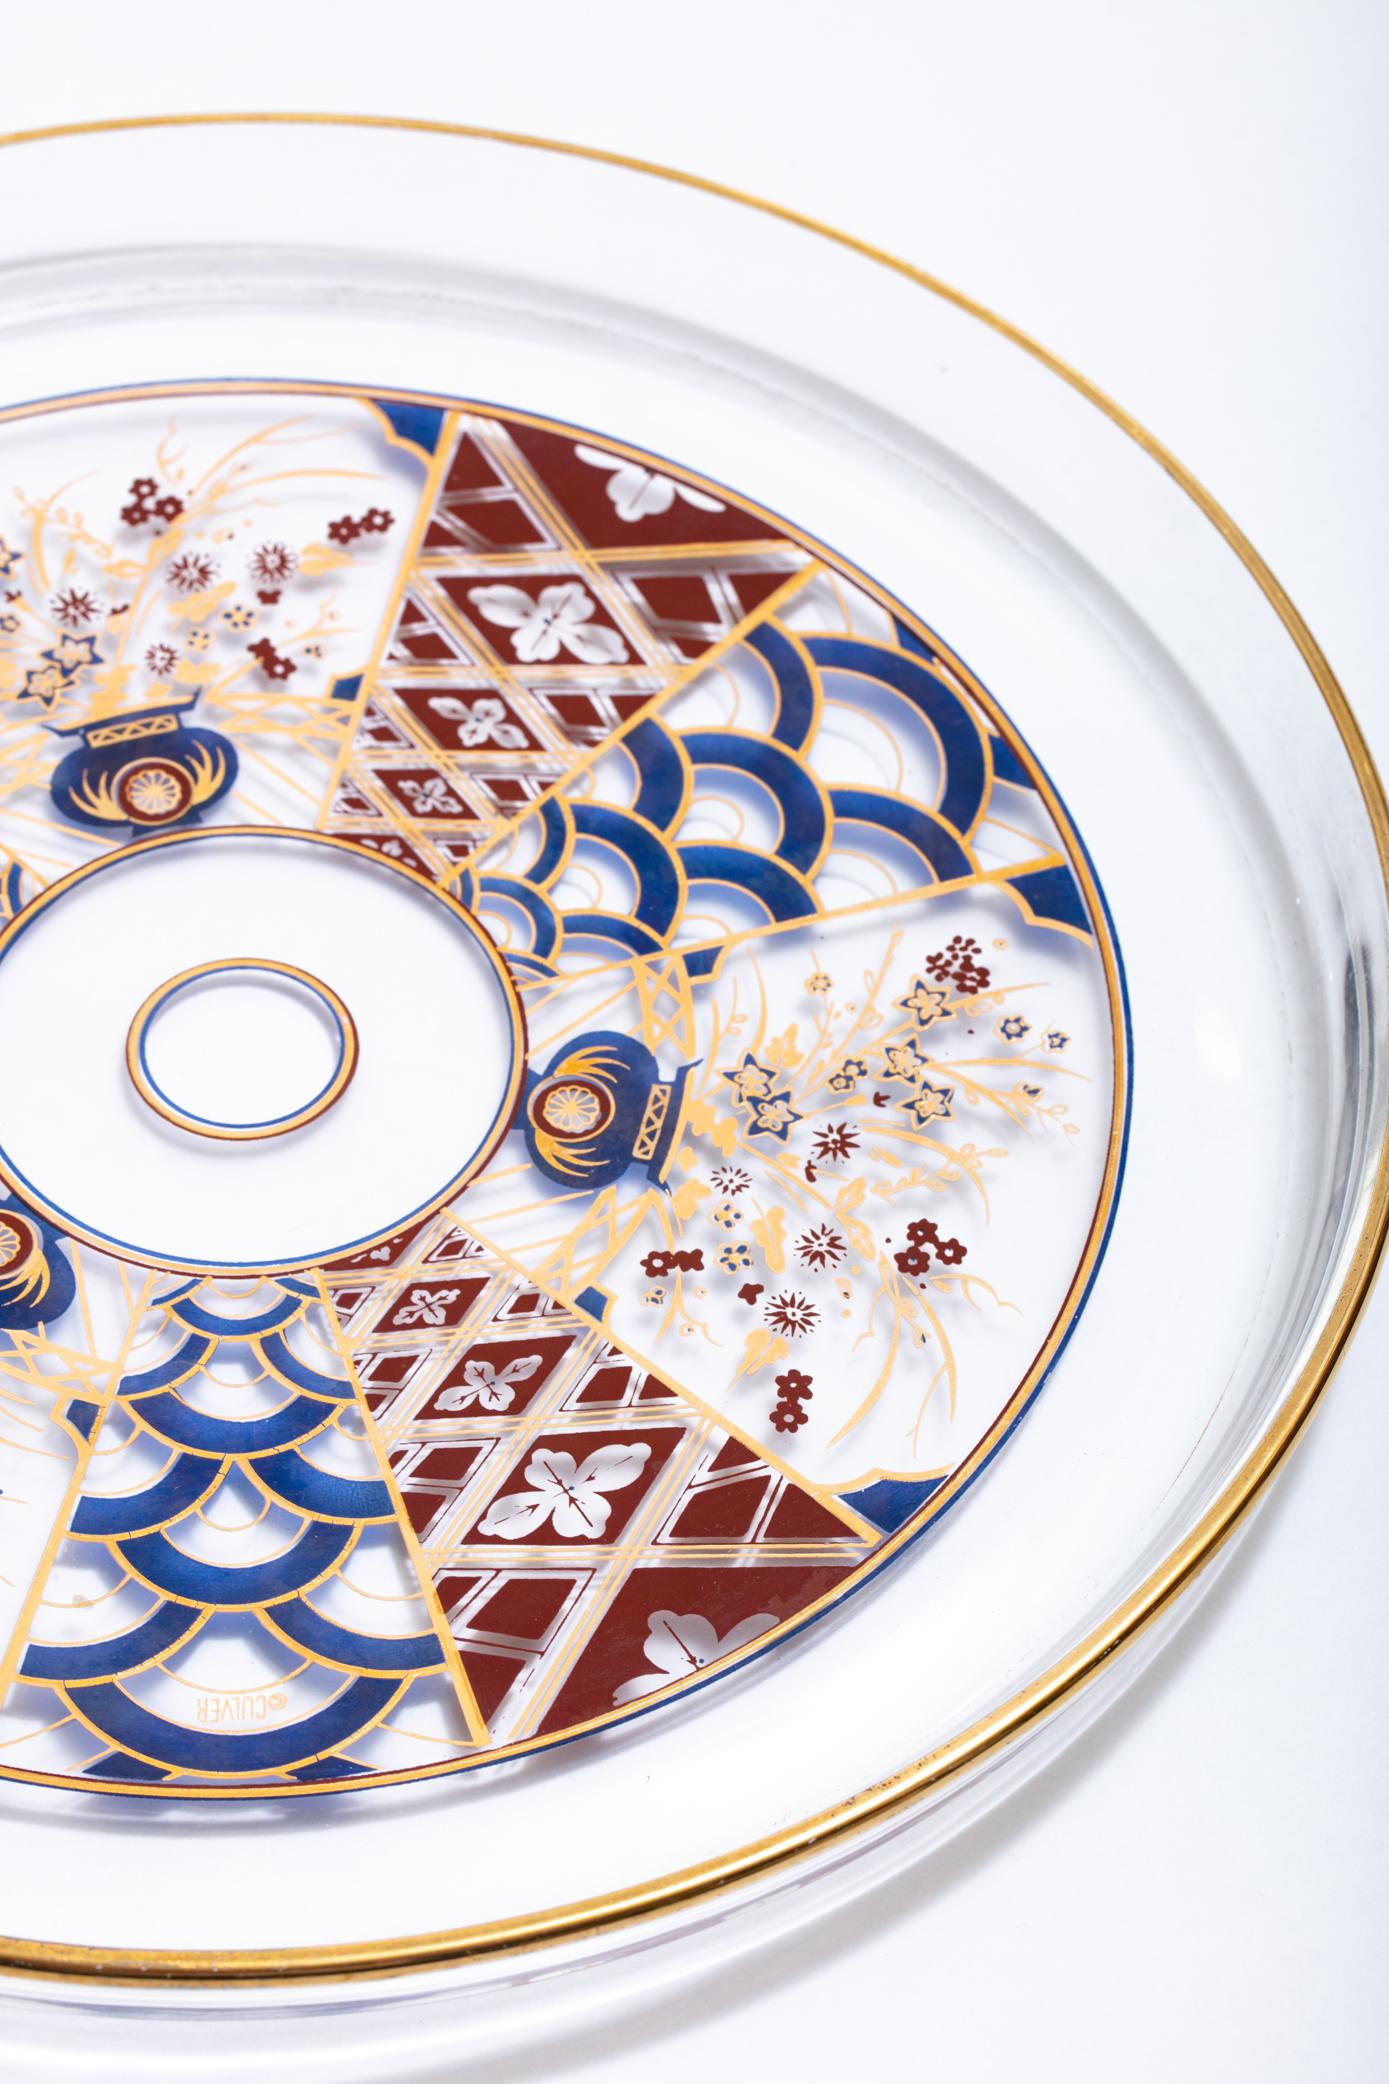 Diese Hors d'oeuvre-Platte im Vintage-Stil mit zartem Chinoiserie-Muster hat einen 22-karätigen, vergoldeten Rand. Verbessern Sie Ihre Unterhaltung mit dieser schönen und einzigartigen Ergänzung. Wir haben noch weitere passende Gläser in unserem